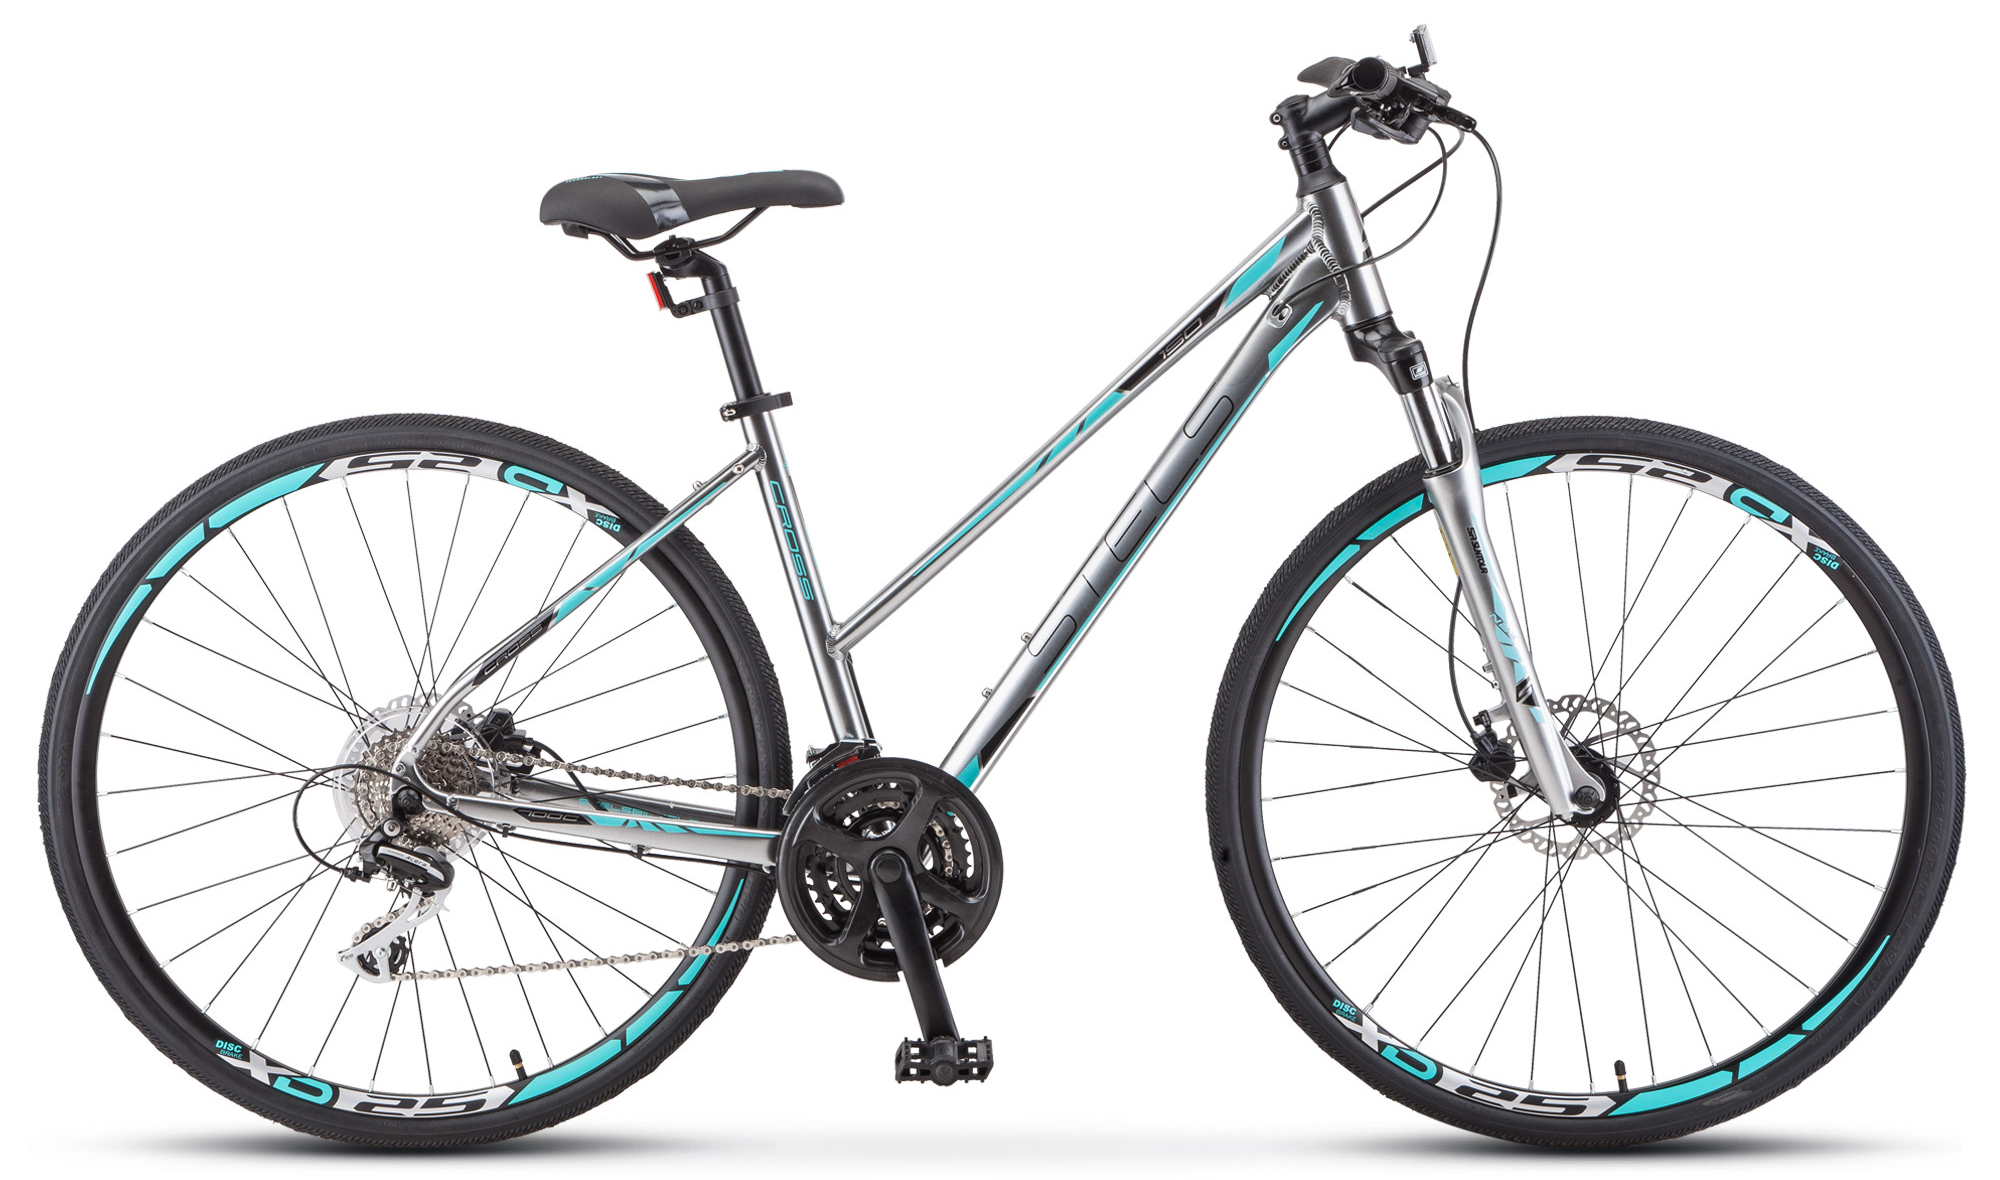  Отзывы о Женском велосипеде Stels Cross 150 D Lady V010 2019